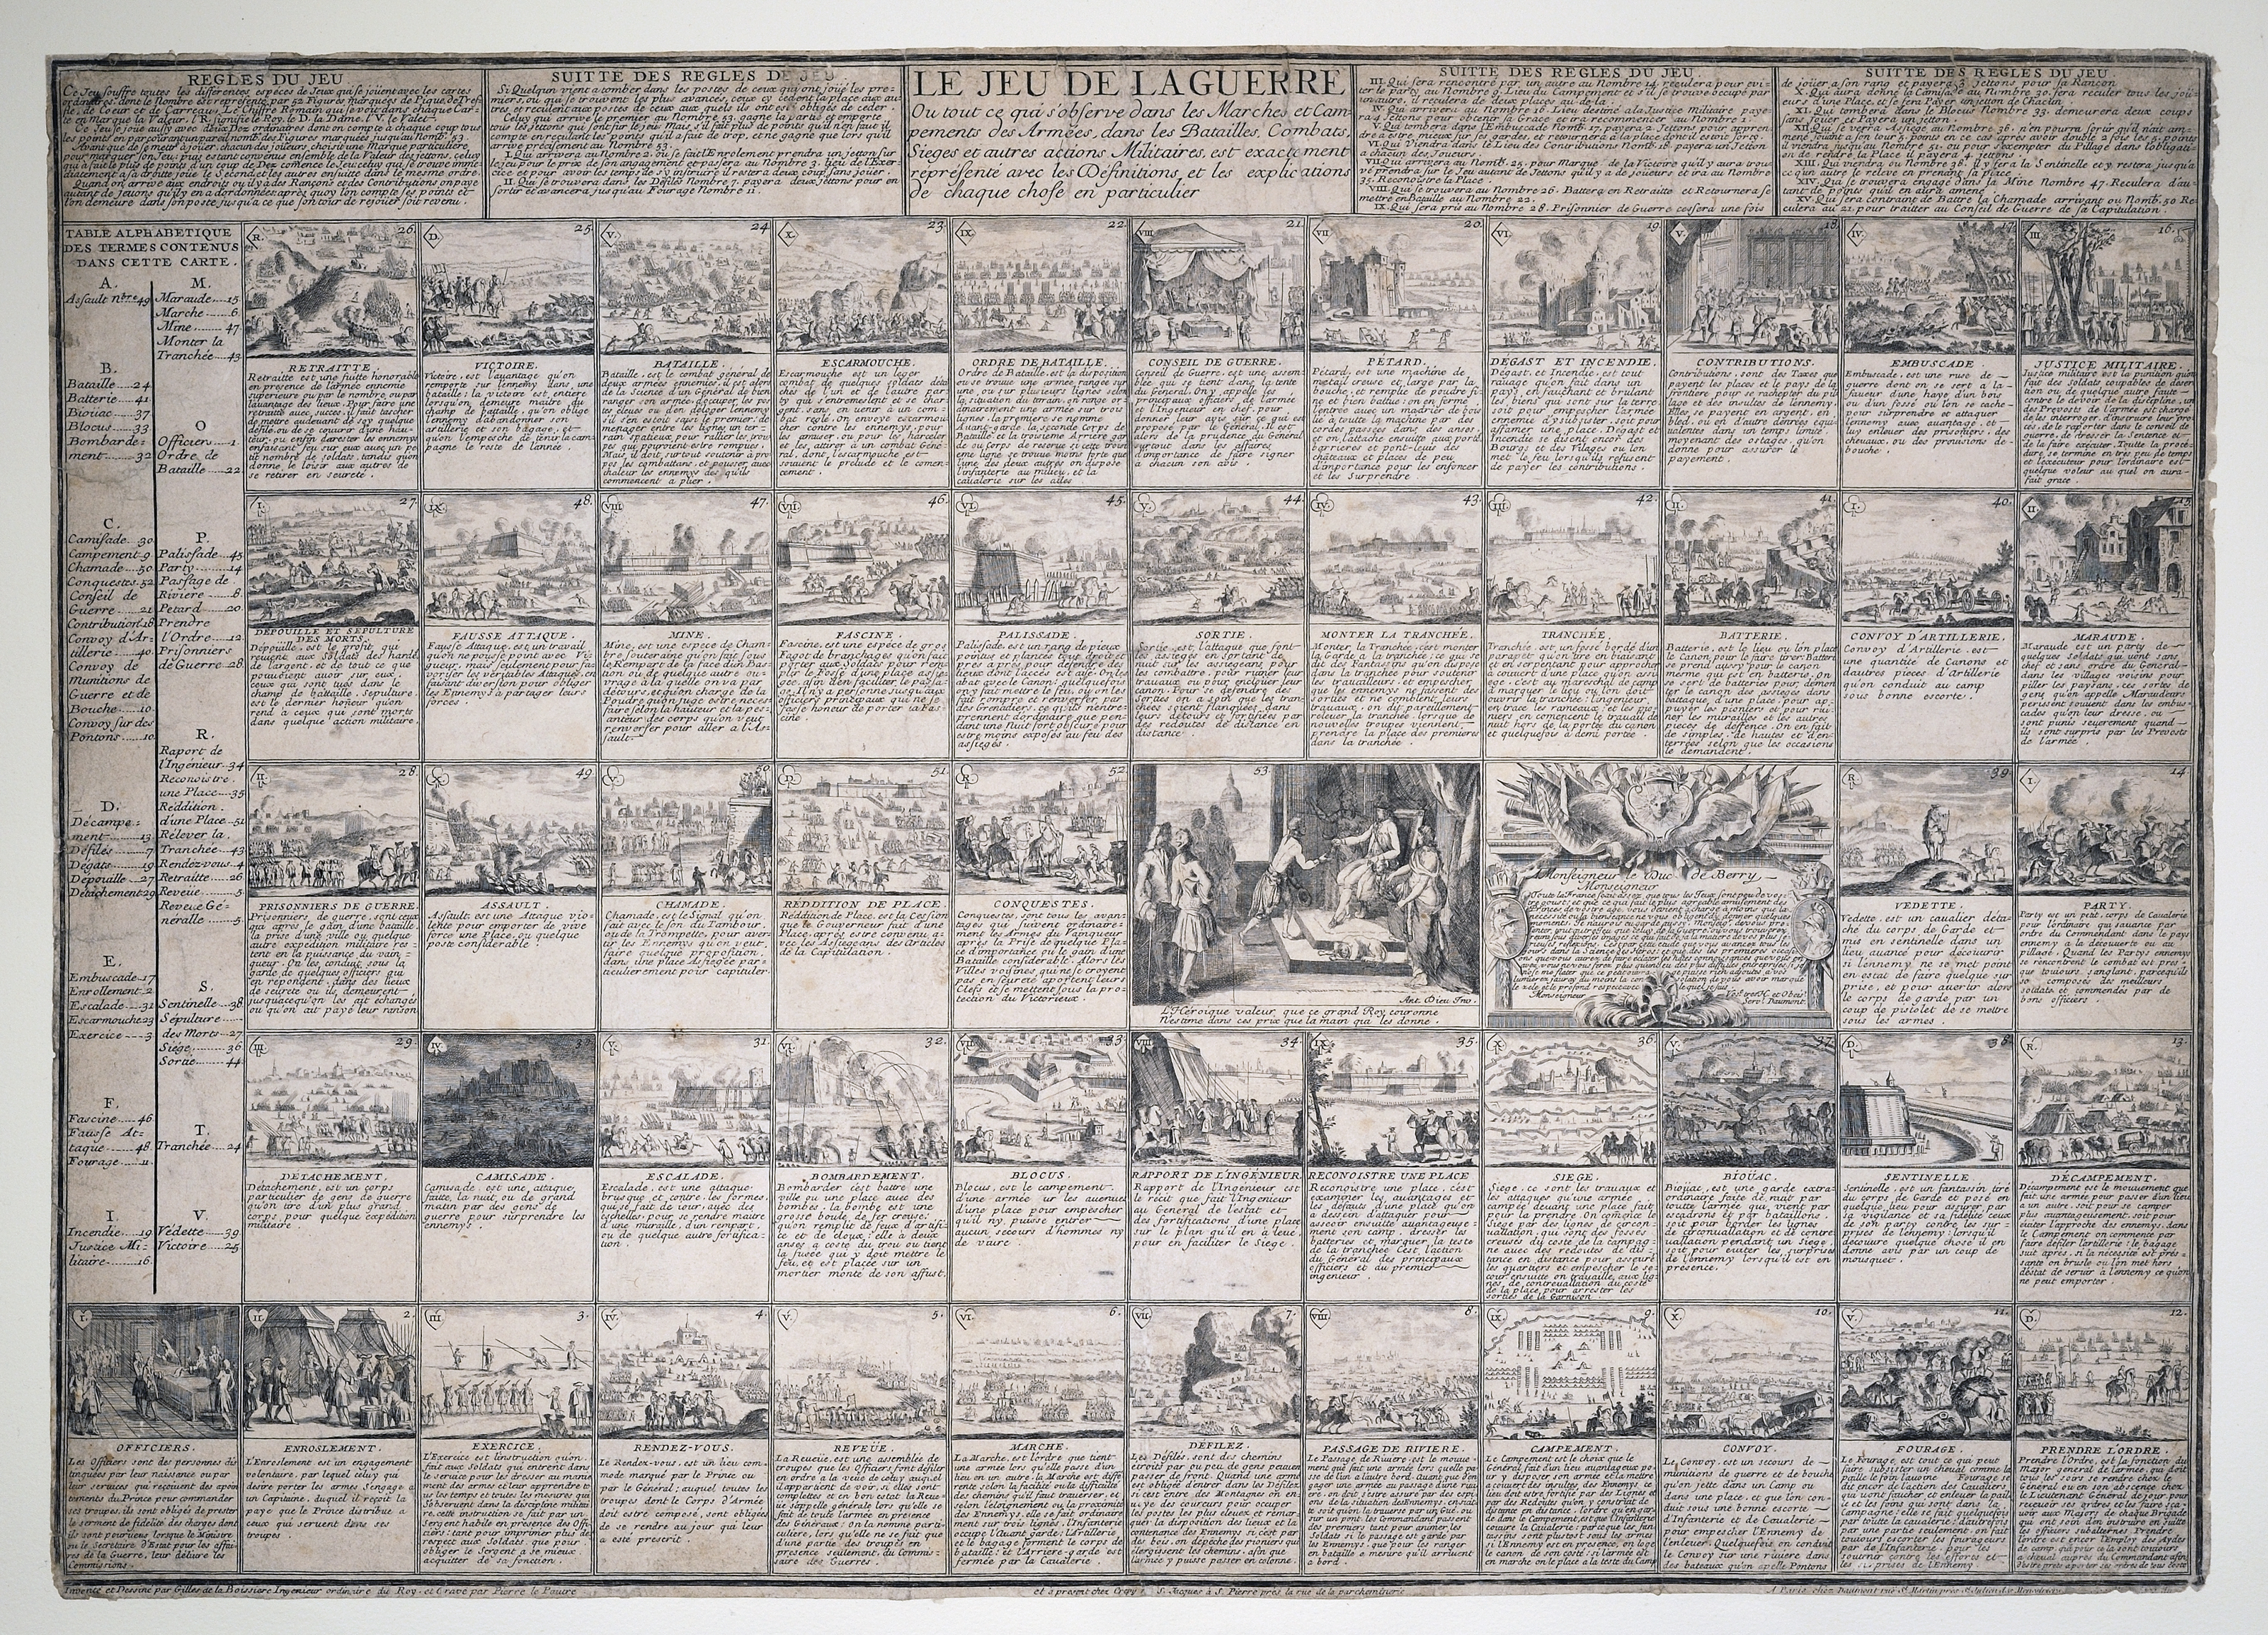 La Jeu de la Guerre. Ou tout ce qui observe dans les Marches et Campements des Armées. ca. 1750.